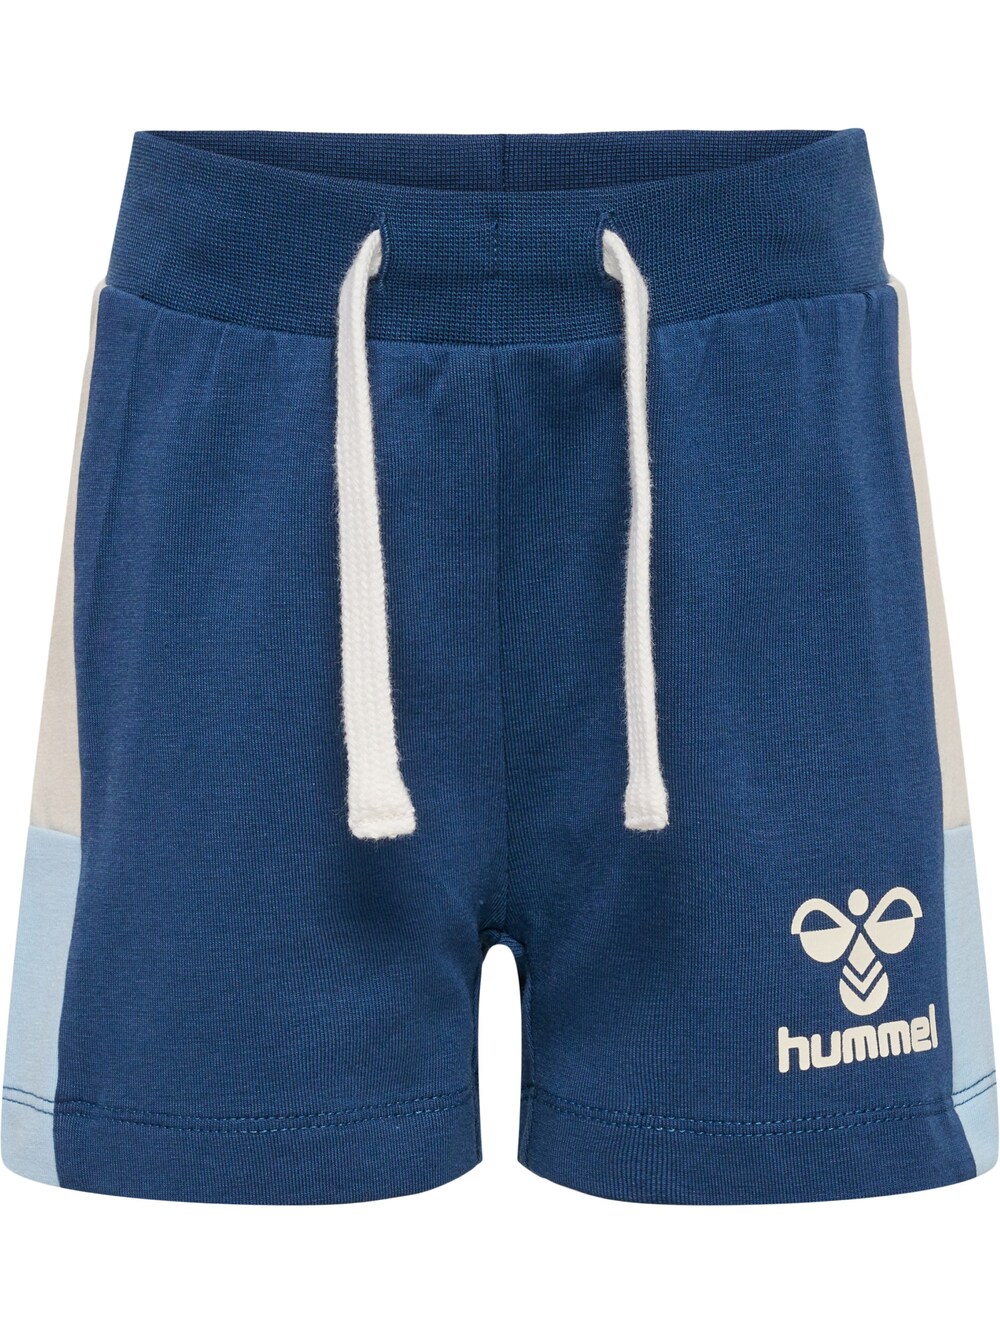 Обычные брюки Hummel, голубой/темно-синий обычные брюки hummel bassim темно синий